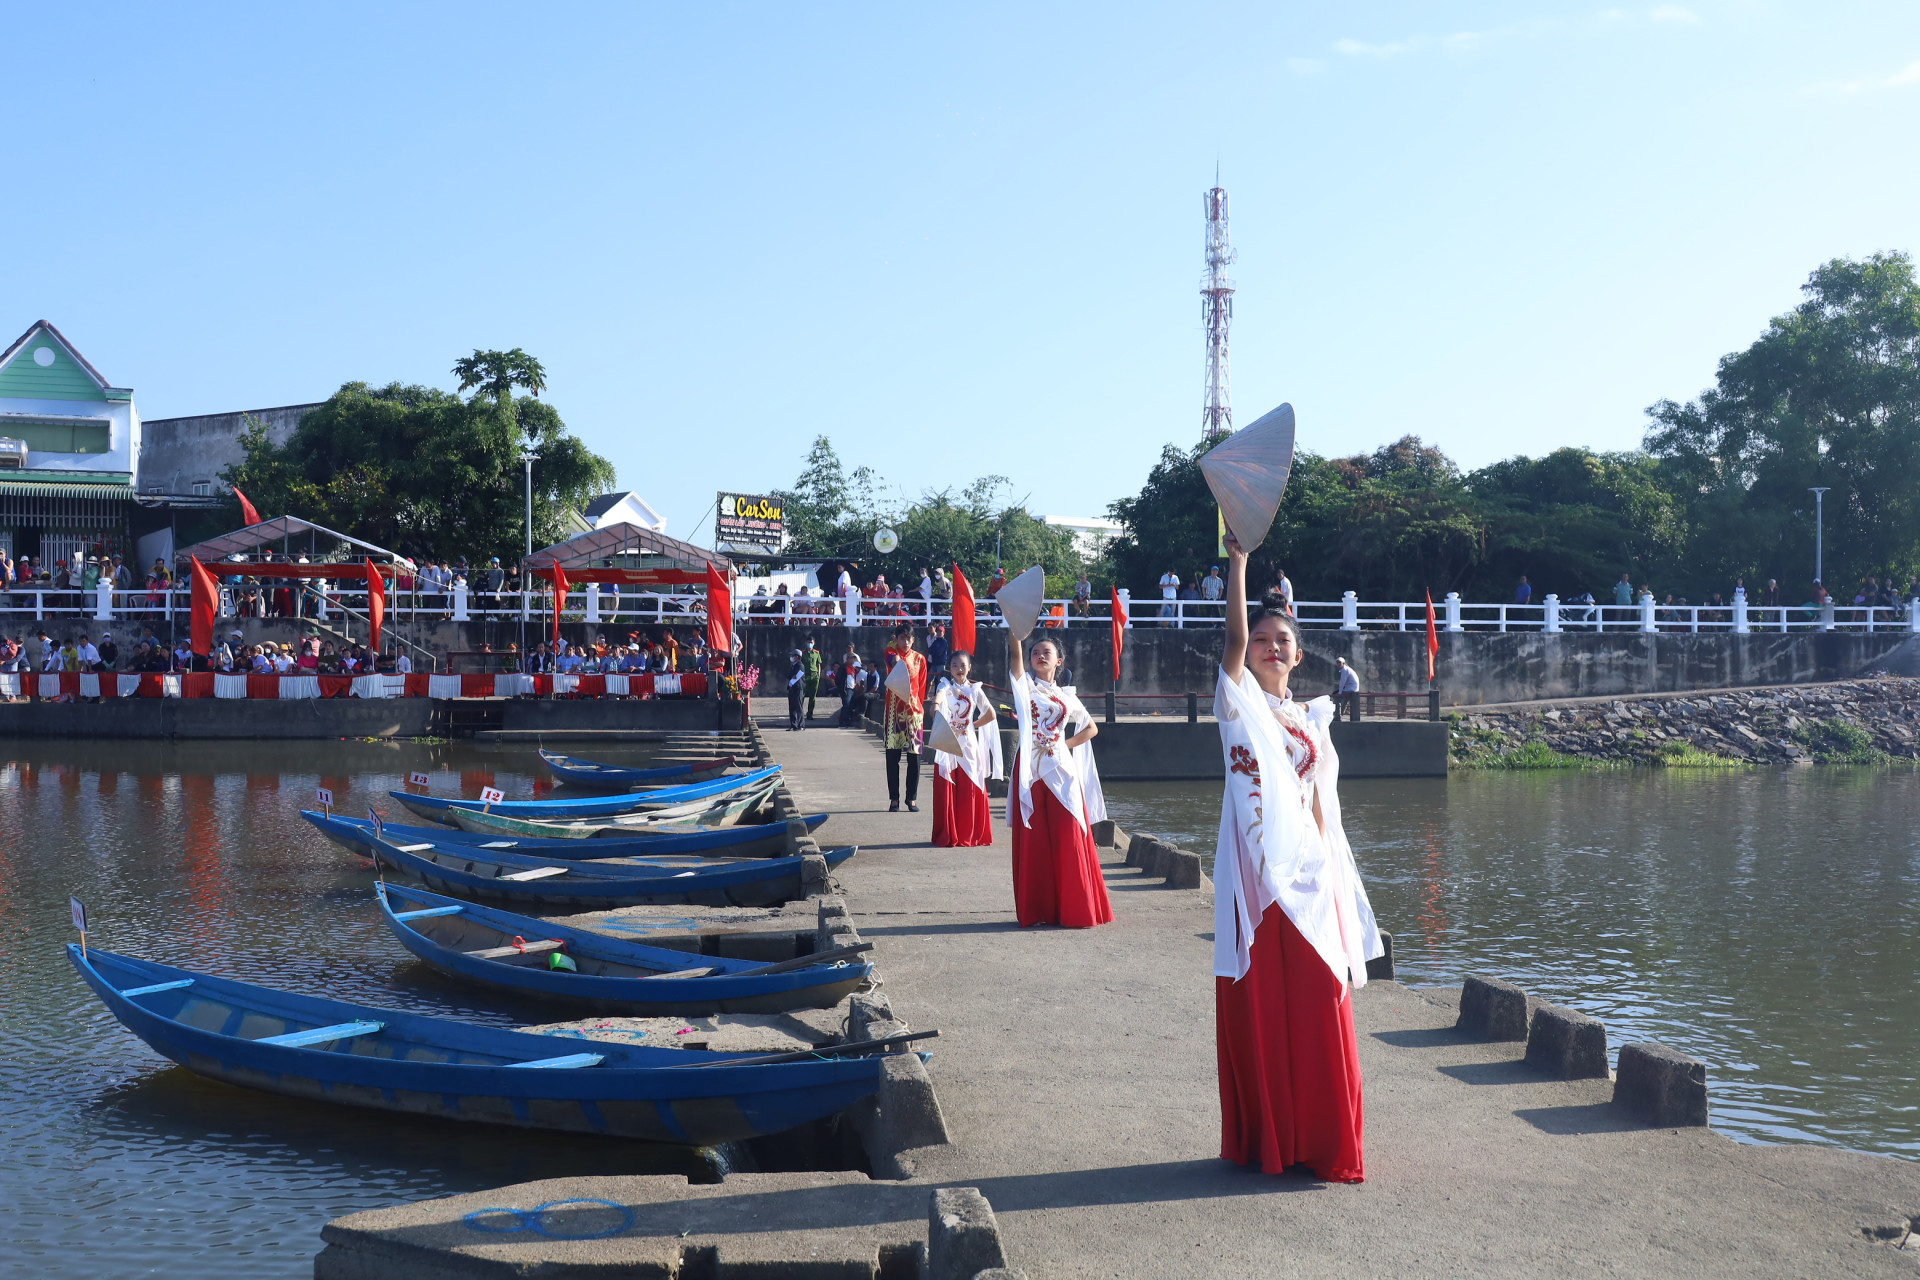 Tiết mục văn nghệ chào mừng lễ hội thuyền hoa và đua thuyền trên sông Dinh.